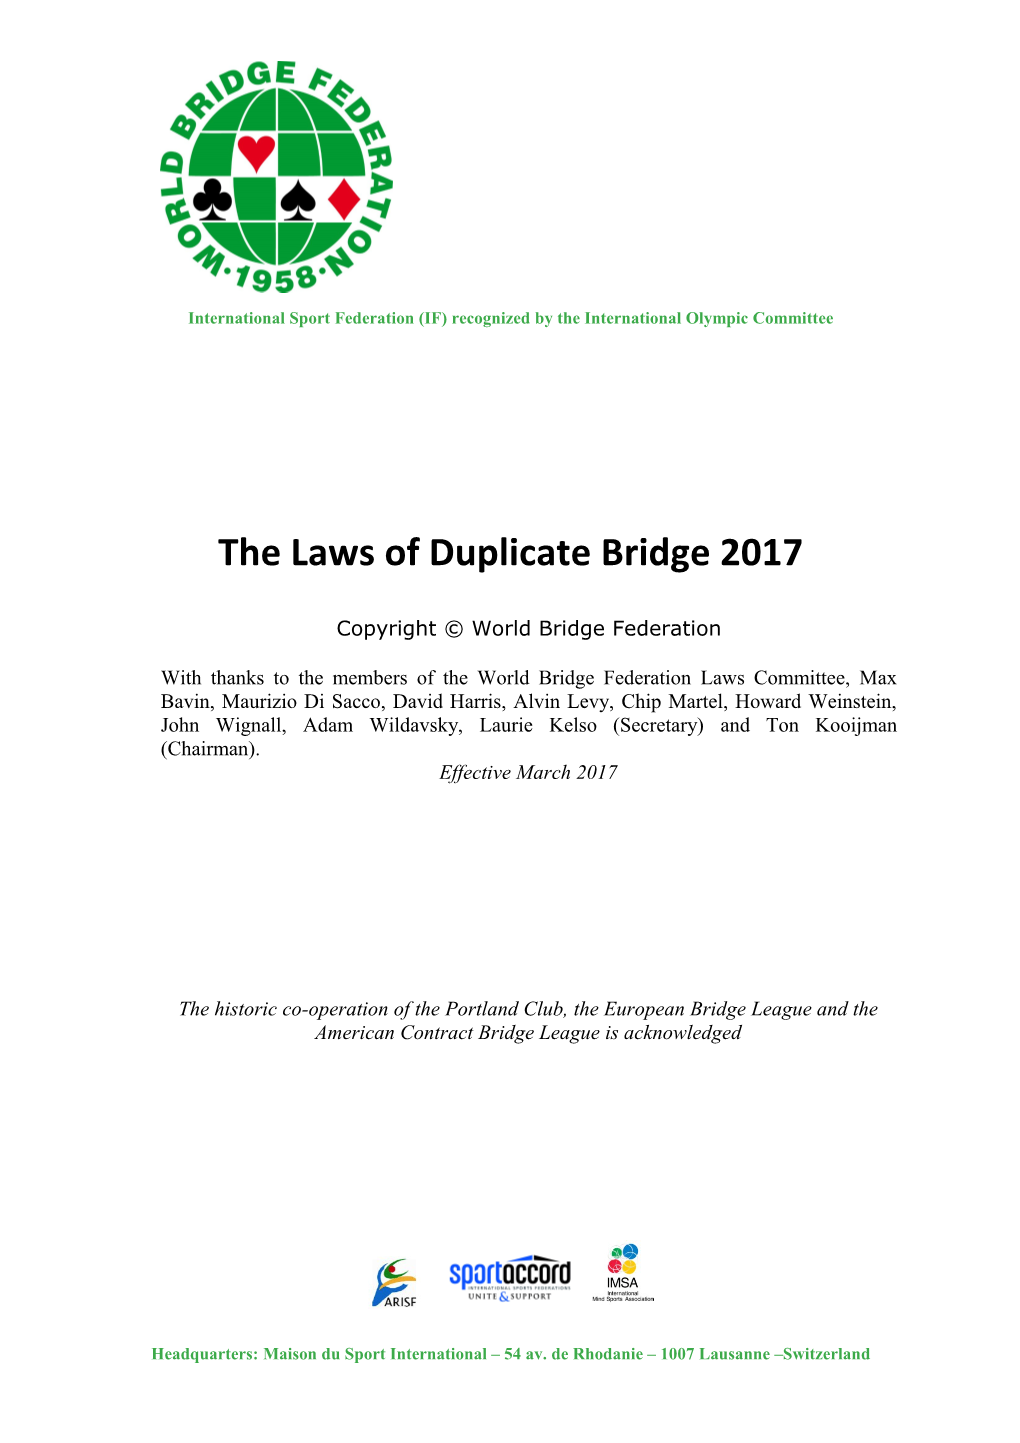 The Laws of Duplicate Bridge 2017